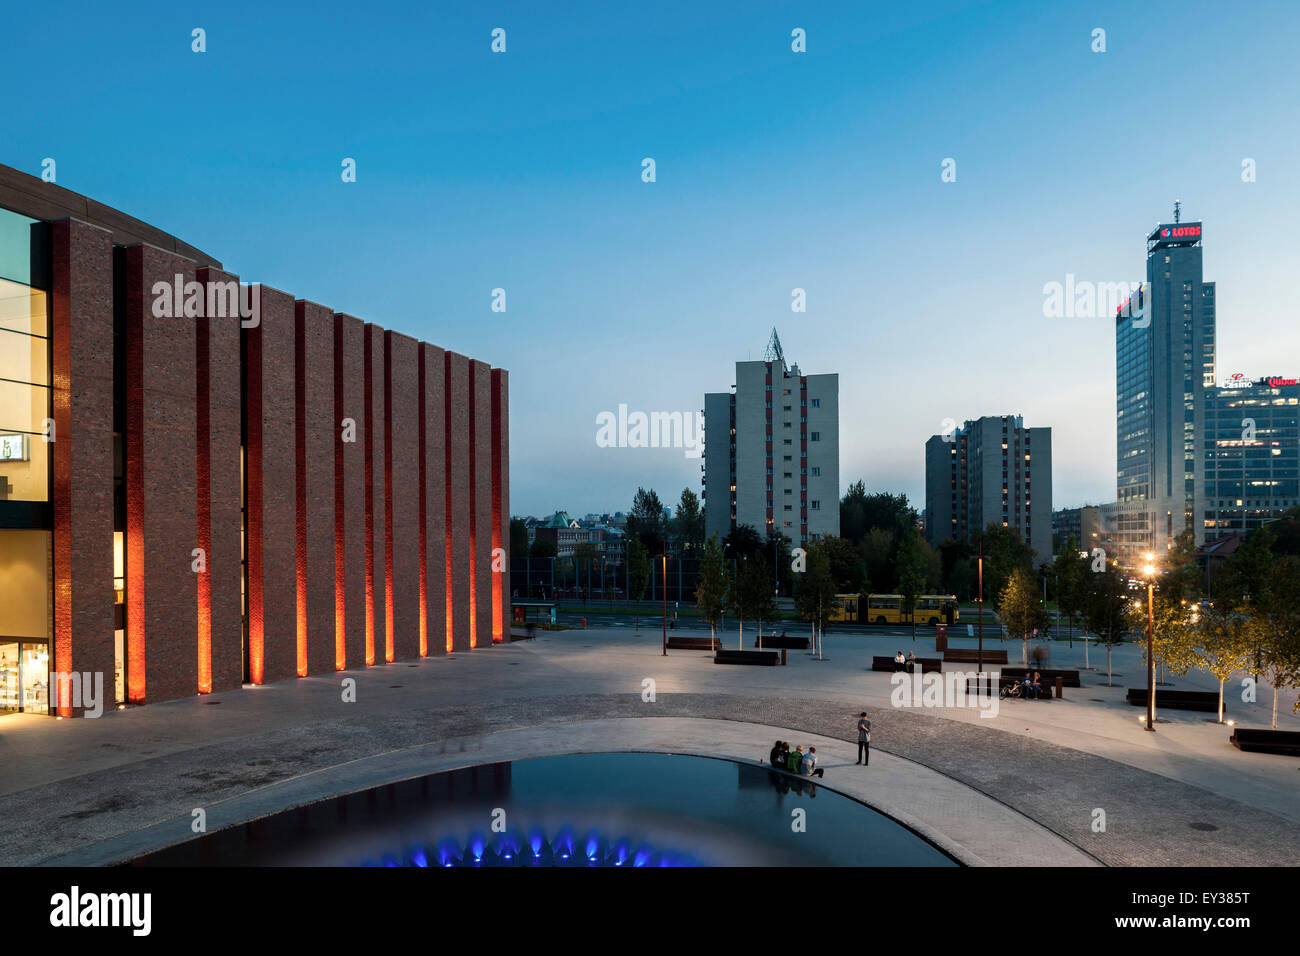 Dusk elevation with public square. National Polish Radio Symphony Orchestra (NOSPR), Katowice, Poland. Architect: Konior Studio Stock Photo